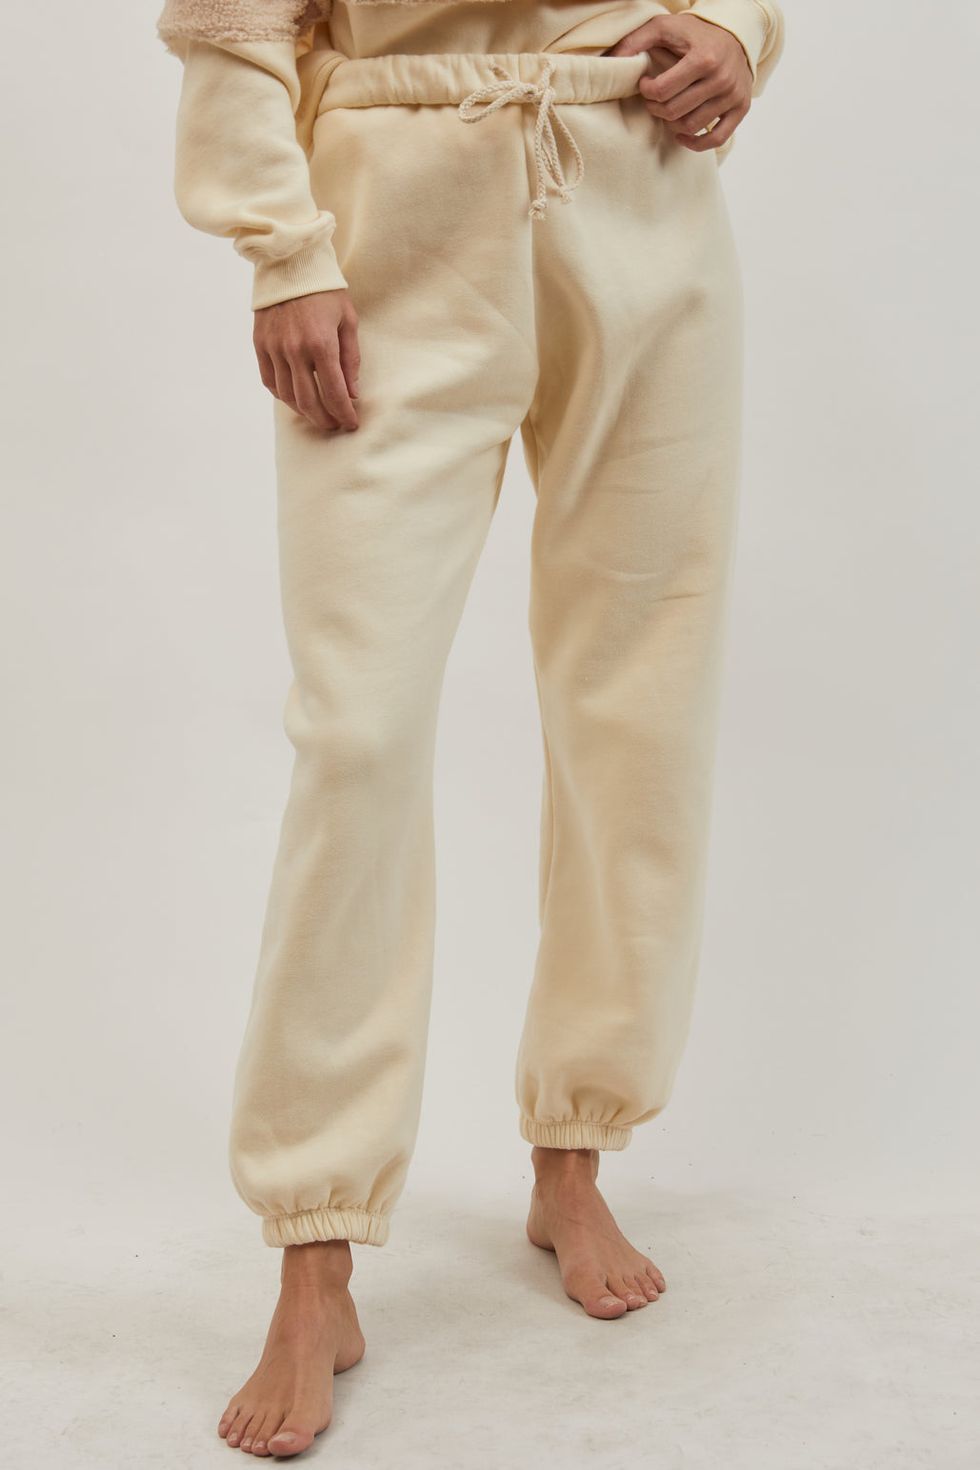 Best Fleece-Lined Sweatpants in 2022 - Cute Fleece-Lined Sweatpants